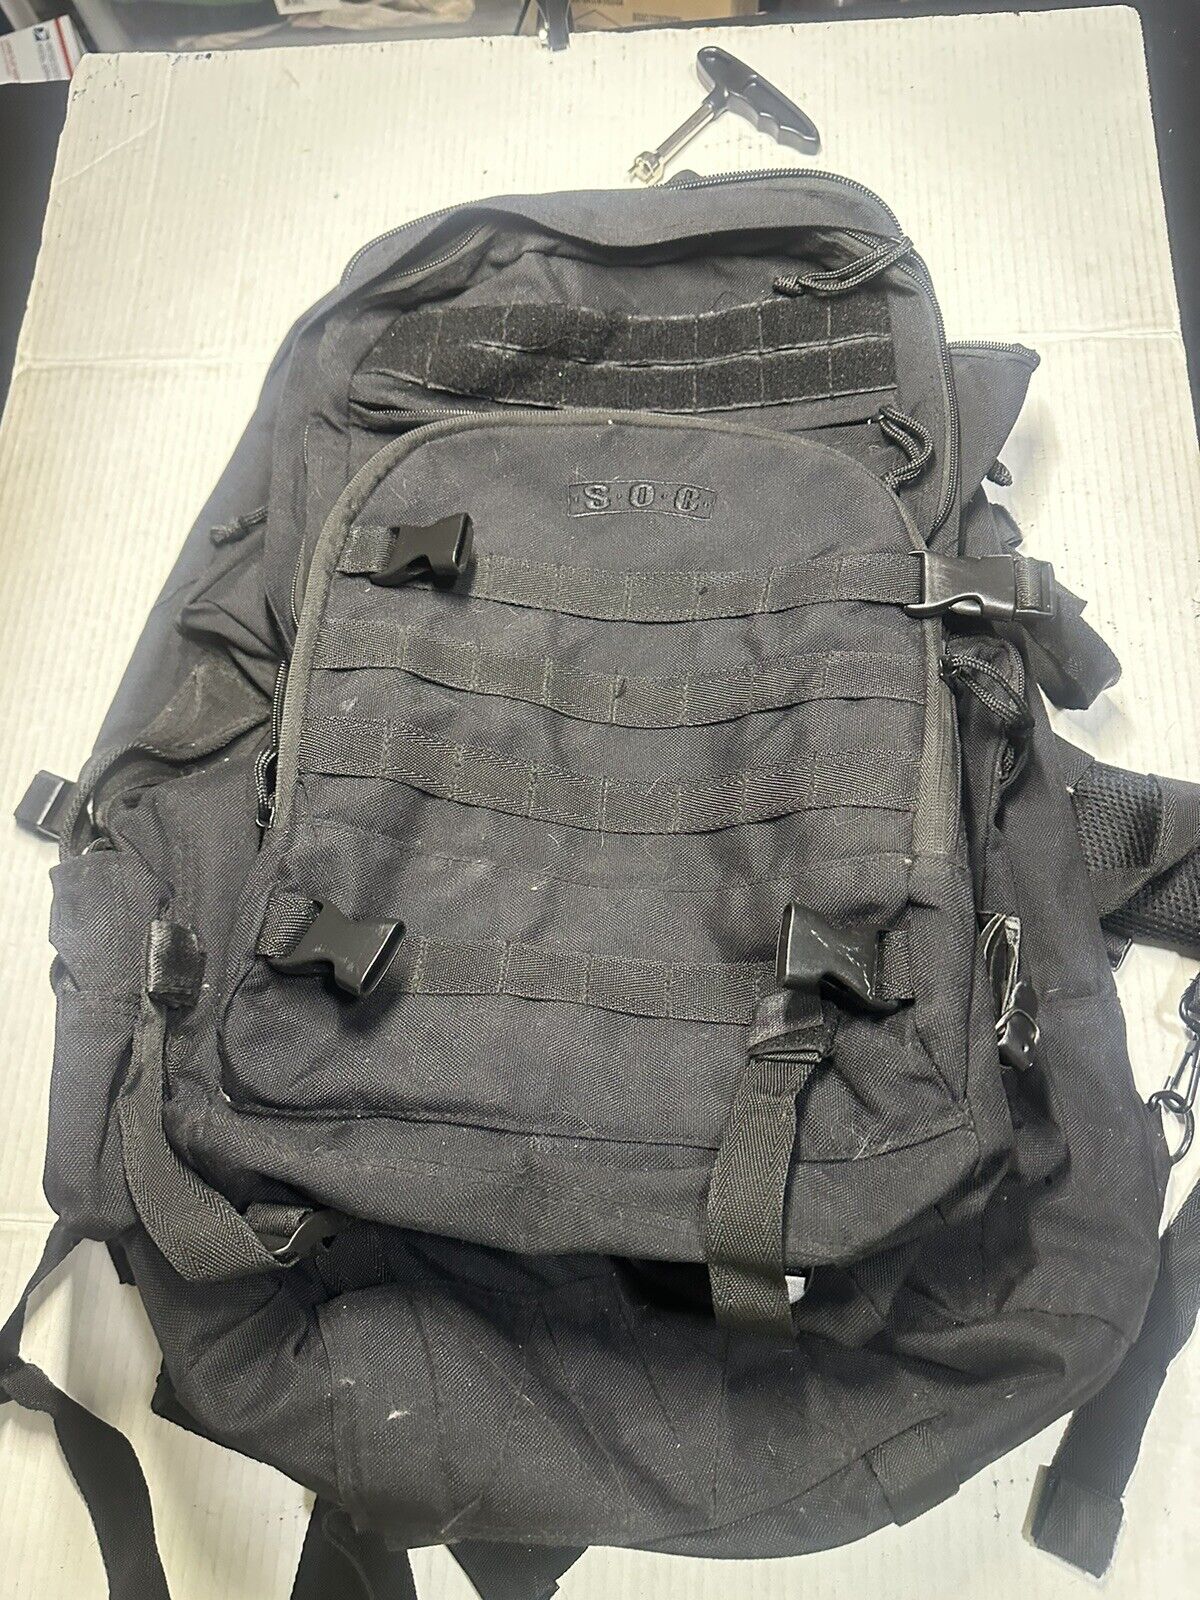 SOC Gear Bugout Bag Black MILITARY TACTICAL BACKPACK SANDPIPER OF CALIFORNIA